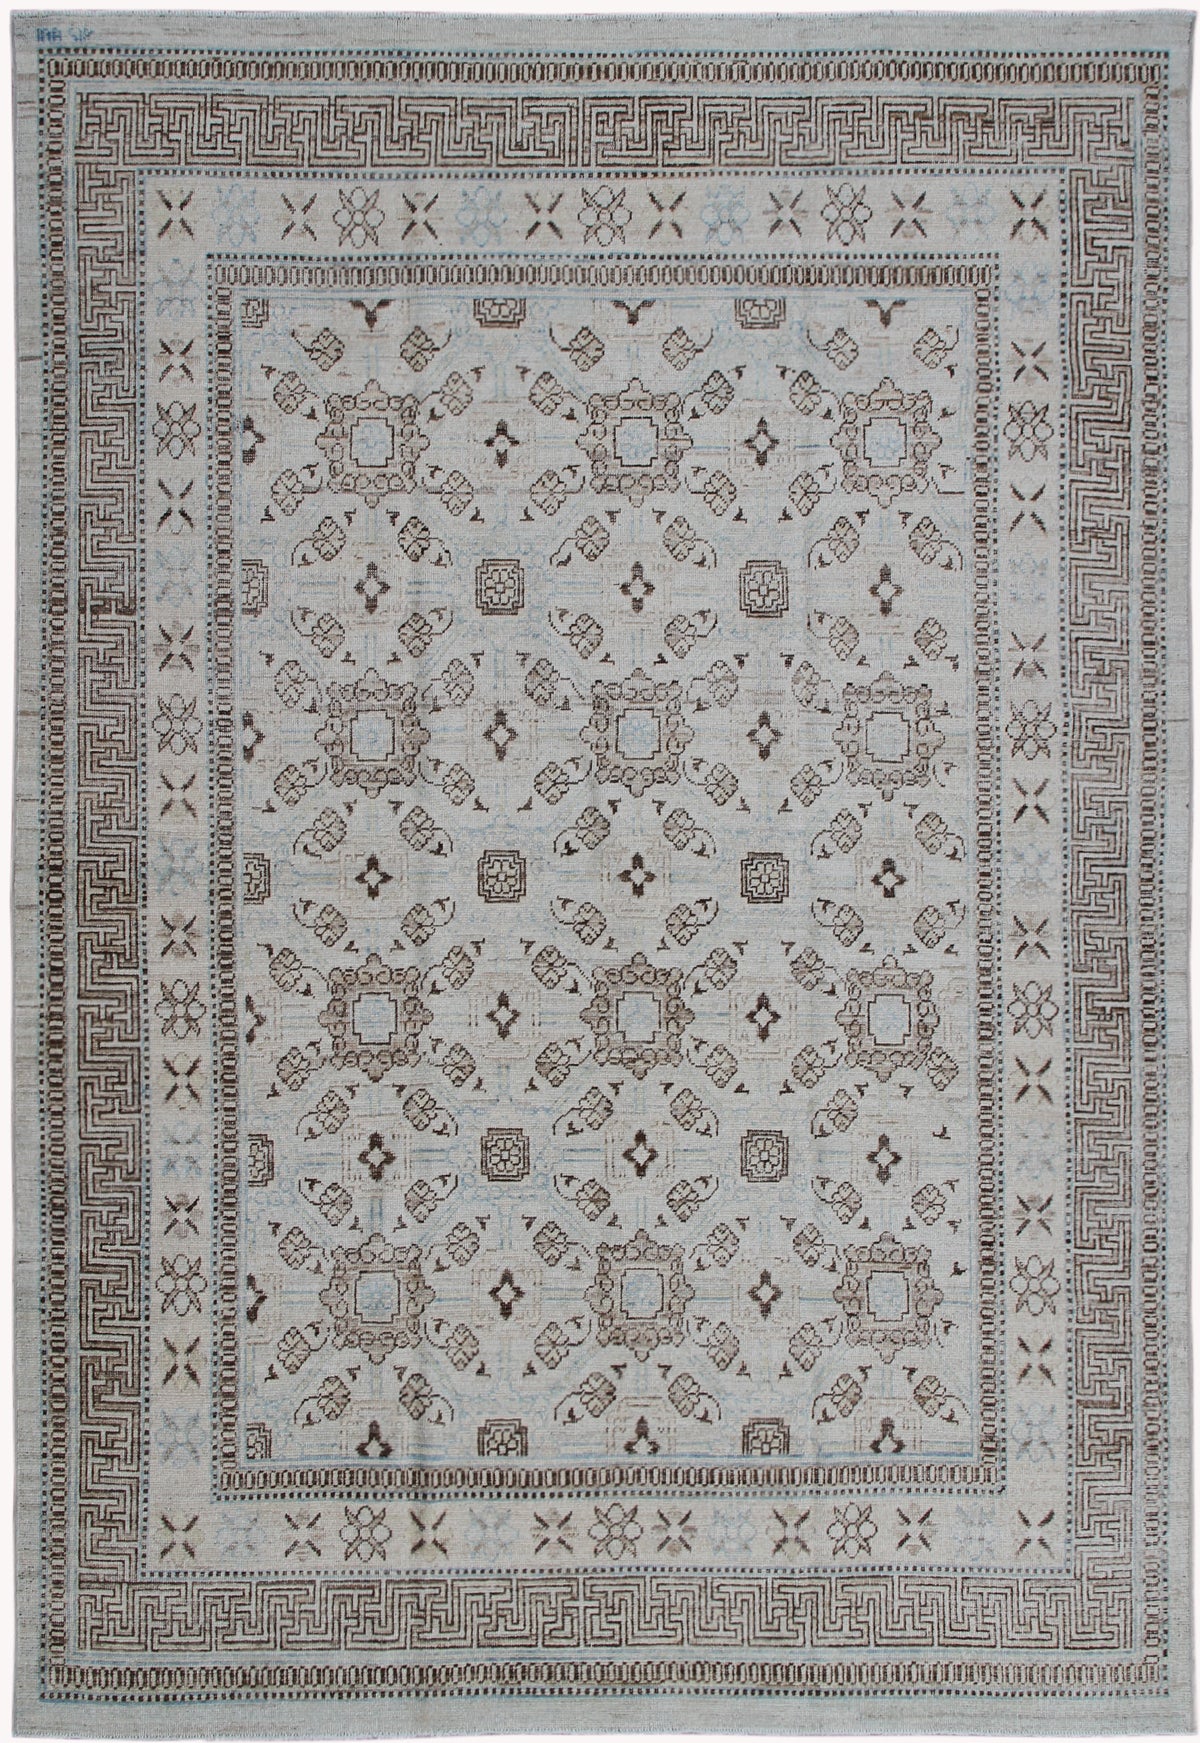 9'x6' Ariana Traditional Samarkand Design Rug